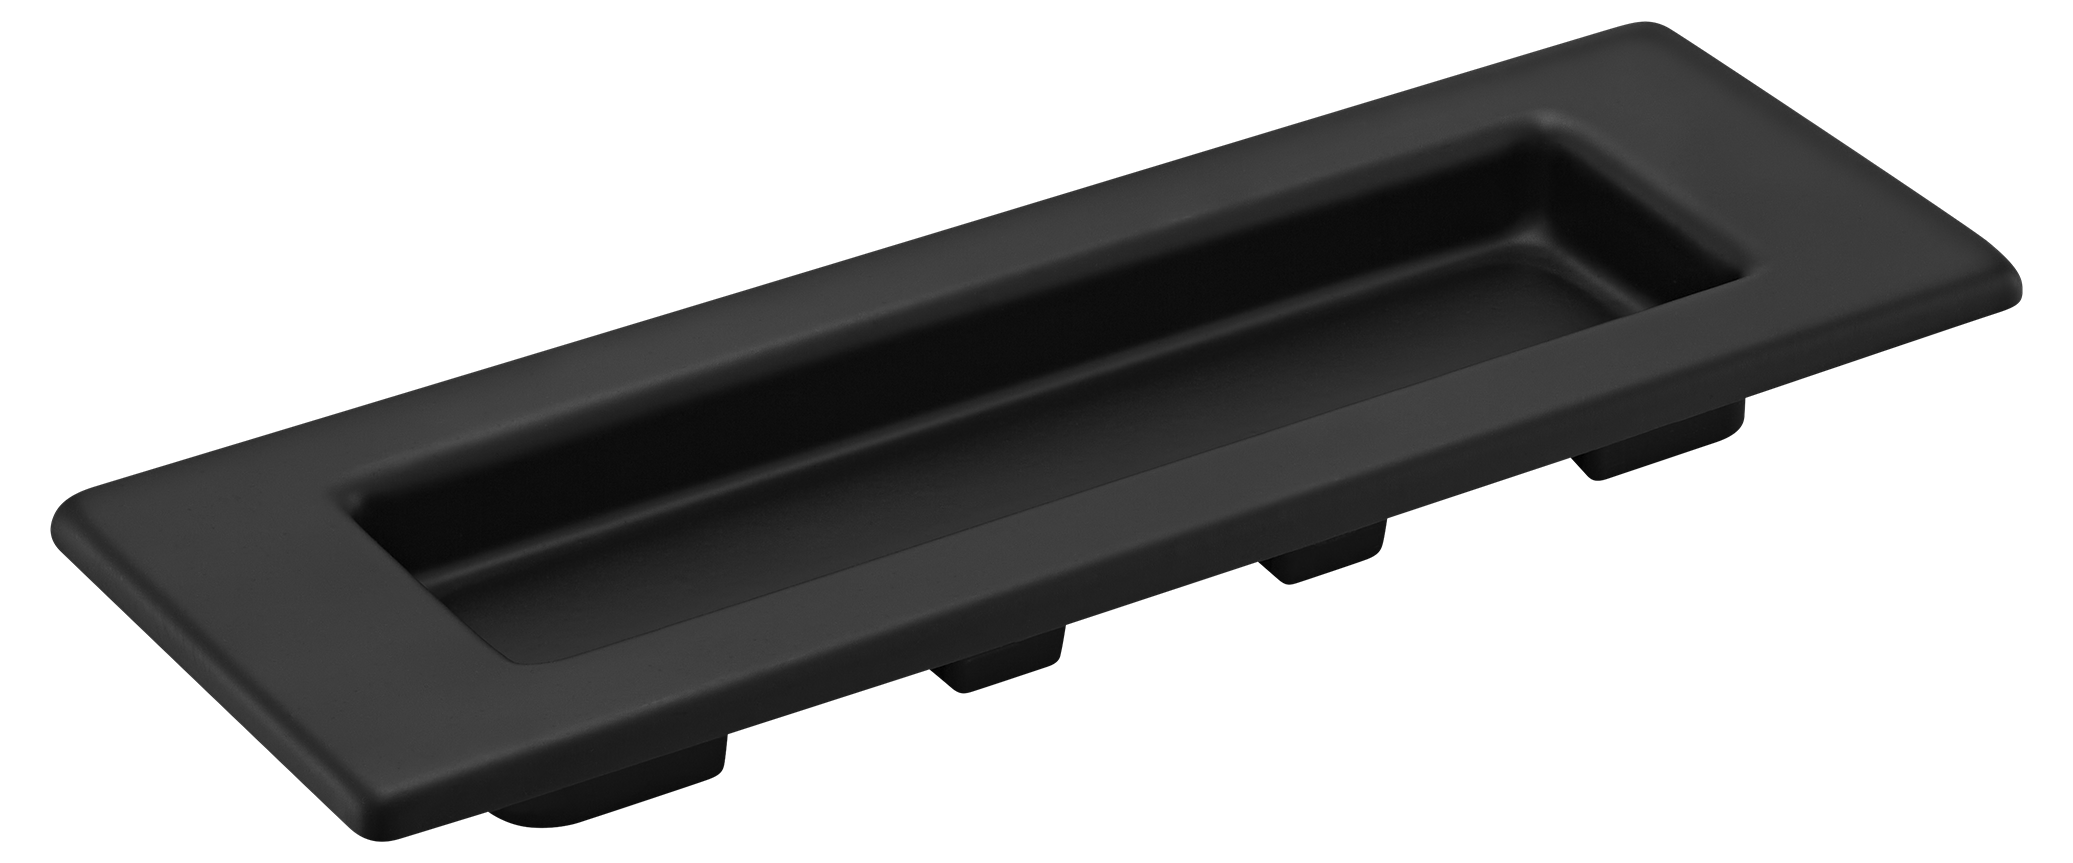 MHS153 BL, ручка для раздвижных дверей, цвет - черный фото купить Пенза